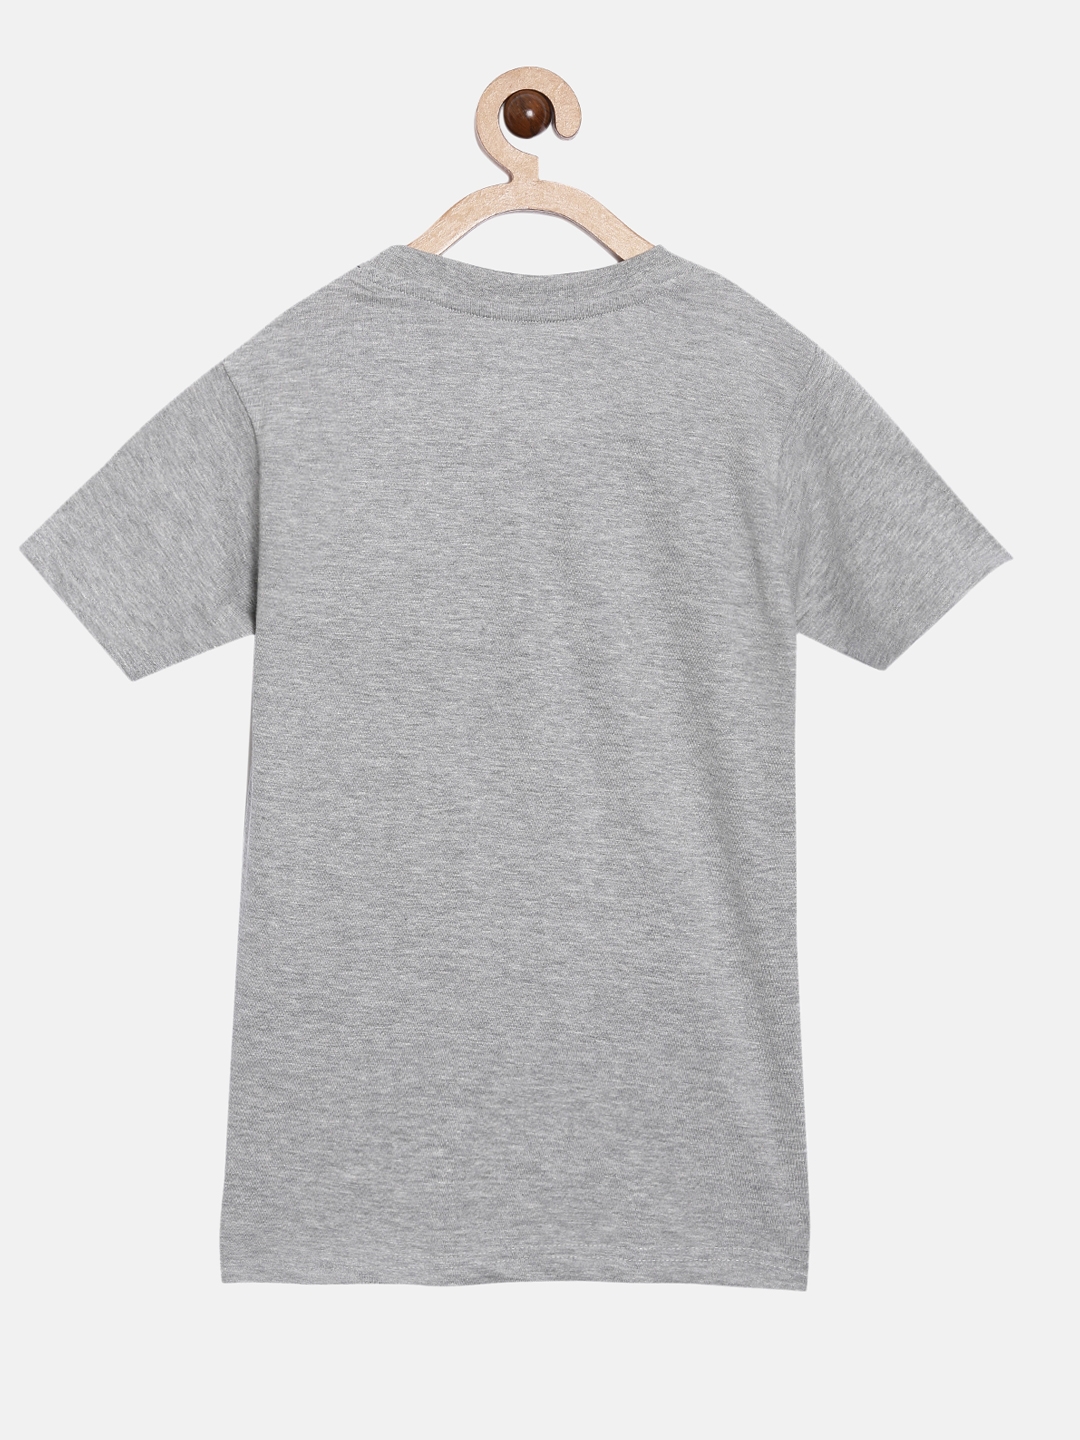 Peejas | Peejas Kids Boys 100% Cotton Printed Casual Tshirt 6